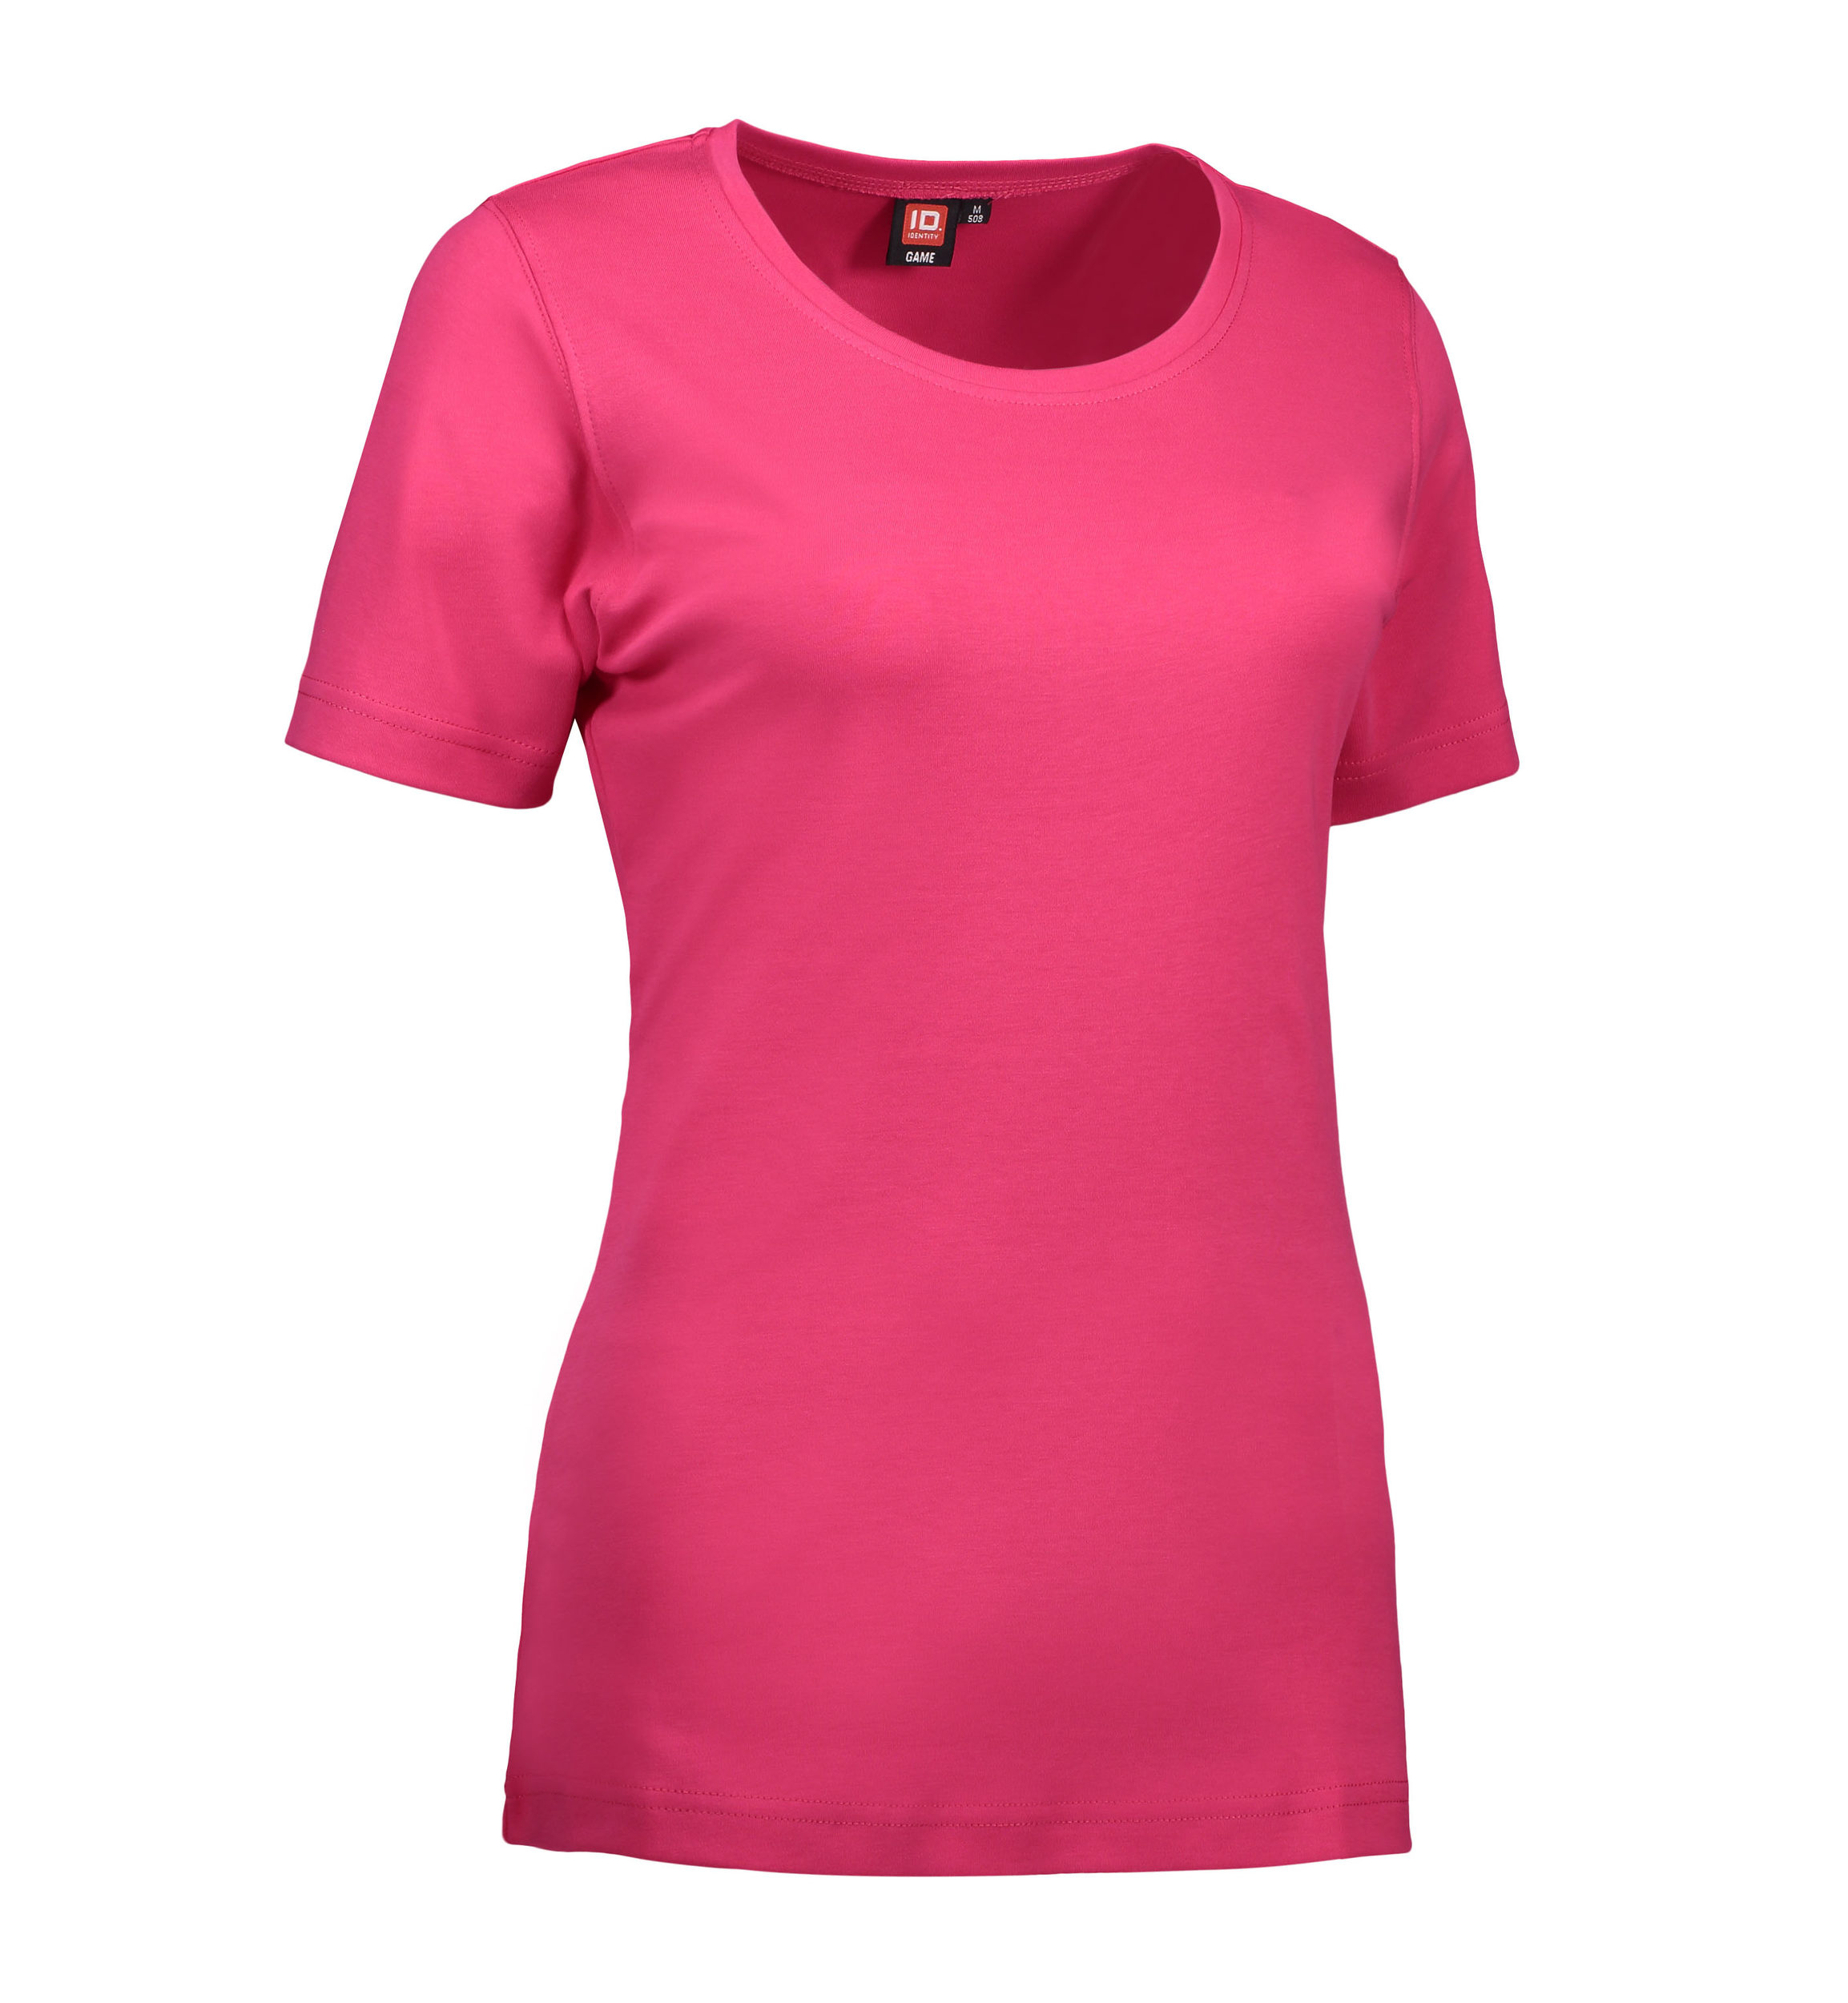 Billede af Dame t-shirt med rund hals i pink - 2XL hos Sygeplejebutikken.dk